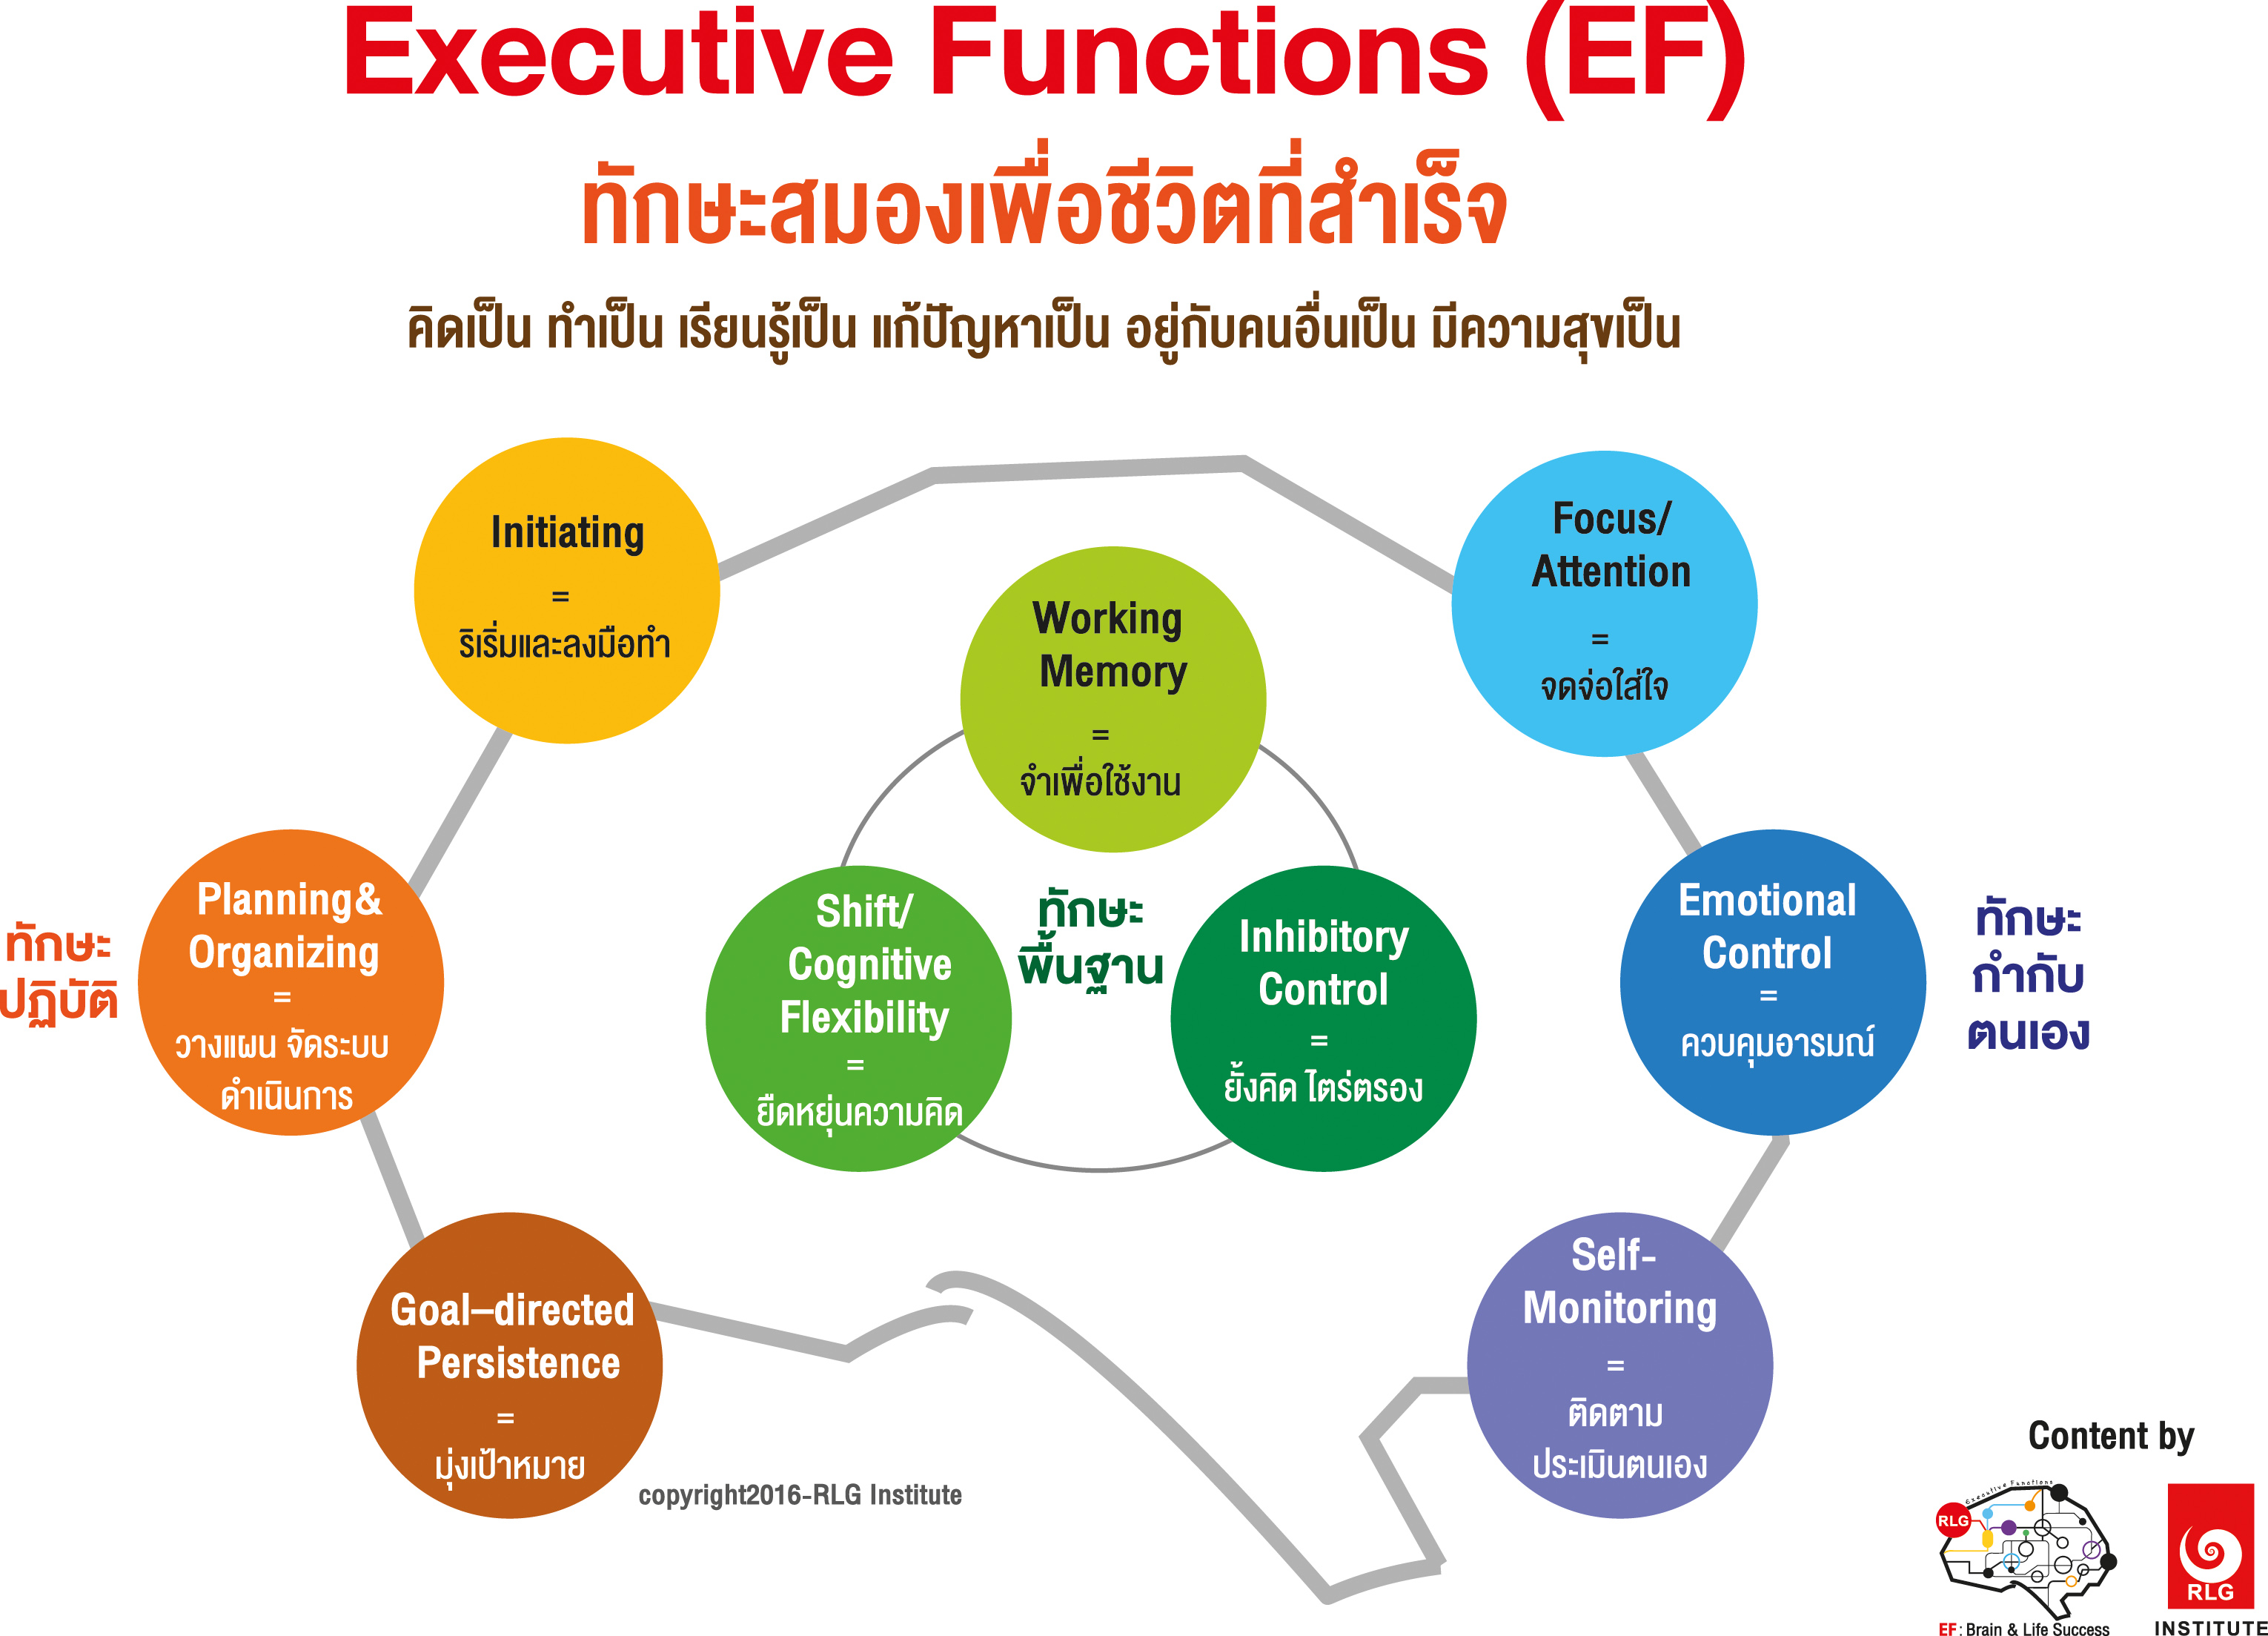 EF, Executive Functions, ทักษะสมองเพื่อชีวิตที่สำเร็จ, การทำงานของสมองส่วนหน้า, ทักษะสมอง EF, พัฒนา EF, ฝึก EF, EF คืออะไร, อีเอฟคืออะไร, ปรับพฤติกรรมลูก, ลูกก้าวร้าว, ลูกเอาแต่ใจ, ลูกดื้อ, ลูกไม่มีความอดทน, ลูกขี้เกียจ, ลูกความจำไม่ดี, ลูกชอบเถียง, ลูกอาละวาด, ลูกอารมณ์ร้าย, ลูกอ่อนไหว, ลูกปรับตัวไม่เป็น, ลูกปรับตัวไม่เก่ง, ลูกขี้อาย, ลูกไม่มีความยับยั้งชั่งใจ, ลูกไม่มีระเบียบ, ลูกไม่มีวินัย, Working memory, ความจำเพื่อใช้งาน, Inhibitory Control, การยั้งคิด ไตร่ตรอง, Shift, Cognitive Flexibility, การยืดหยุ่นความคิด,Focus, Attention, จดจ่อใส่ใจ, Emotional Control, การควบคุมอารมณ์, Planning,Organizing, การวางแผน, การจัดระบบดำเนินการ, Self-Monitoring, การรู้จักประเมินตนเอง,Initiating, การริเริ่มและลงมือทำ, Goal-Directed Persistence, ความพากเพียร, มุ่งสู่เป้าหมาย, เลี้ยงลูกให้เก่ง, เลี้ยงลูกให้เอาตัวรอด, เลี้ยงลูกให้ดี, เลี้ยงลูกให้ฉลาด, เลี้ยงลูกให้เป็นคนดี, เลี้ยงลูกให้ดูแลตัวเองได้